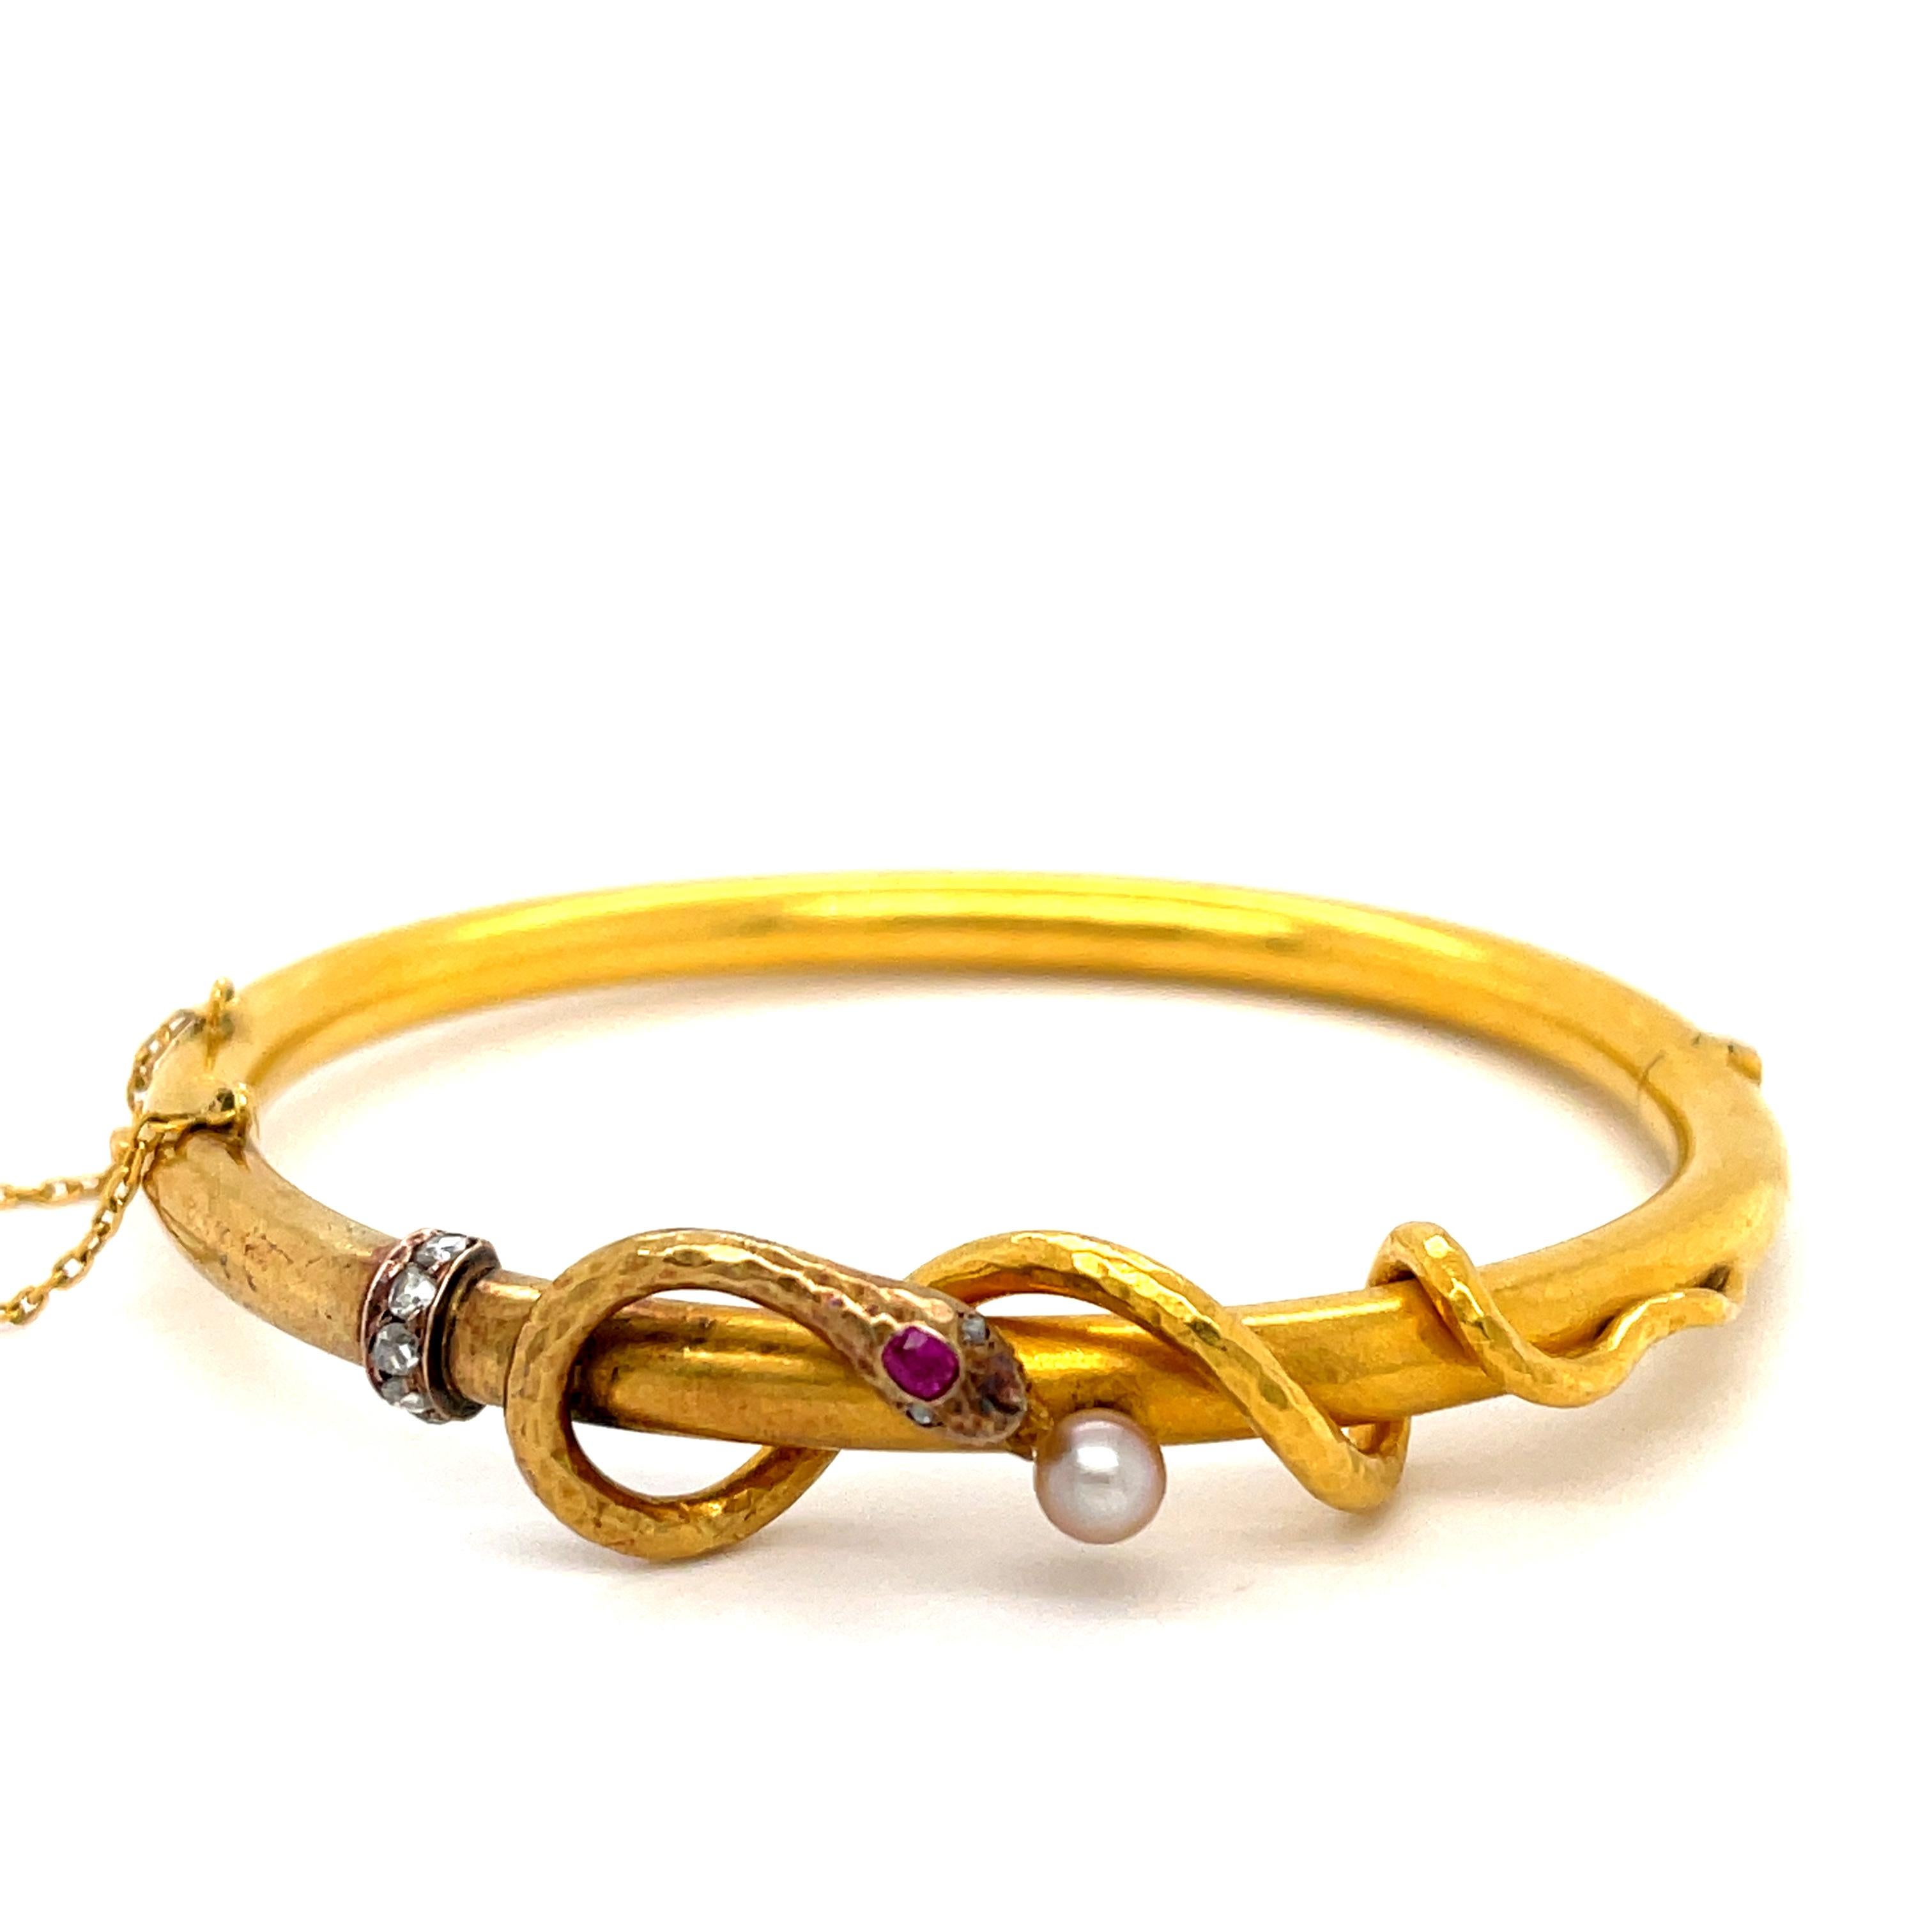 Victorian Antique 18 Karat Gold Snake Bangle Bracelet